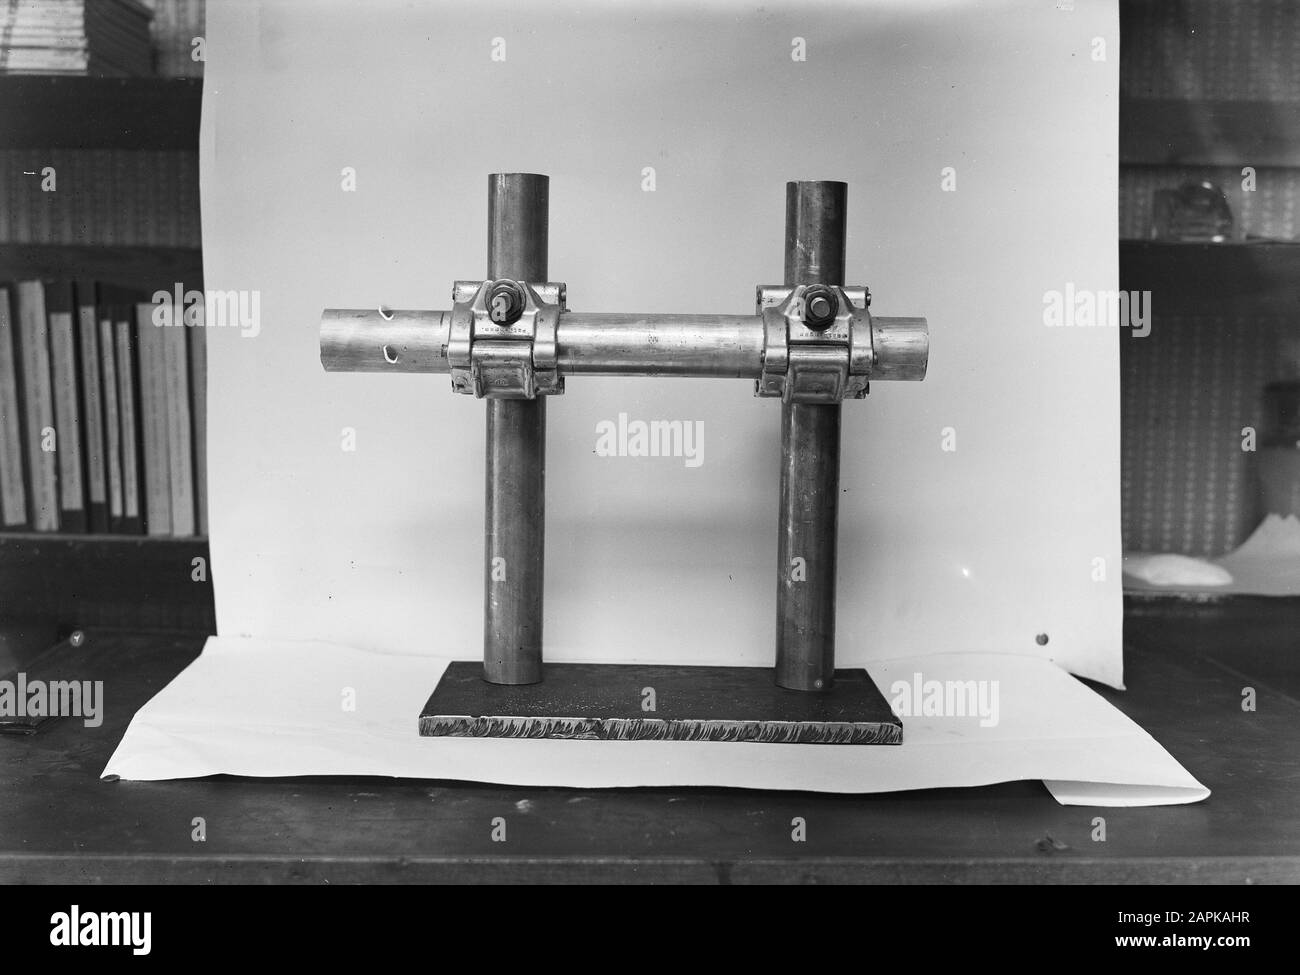 10x15 Trial Aluminium Gerüstklemme des technischen Büros Bovanda bei S-aage Datum: Juni 1950 Schlagwörter: Versuche, Gerüstschellen Stockfoto